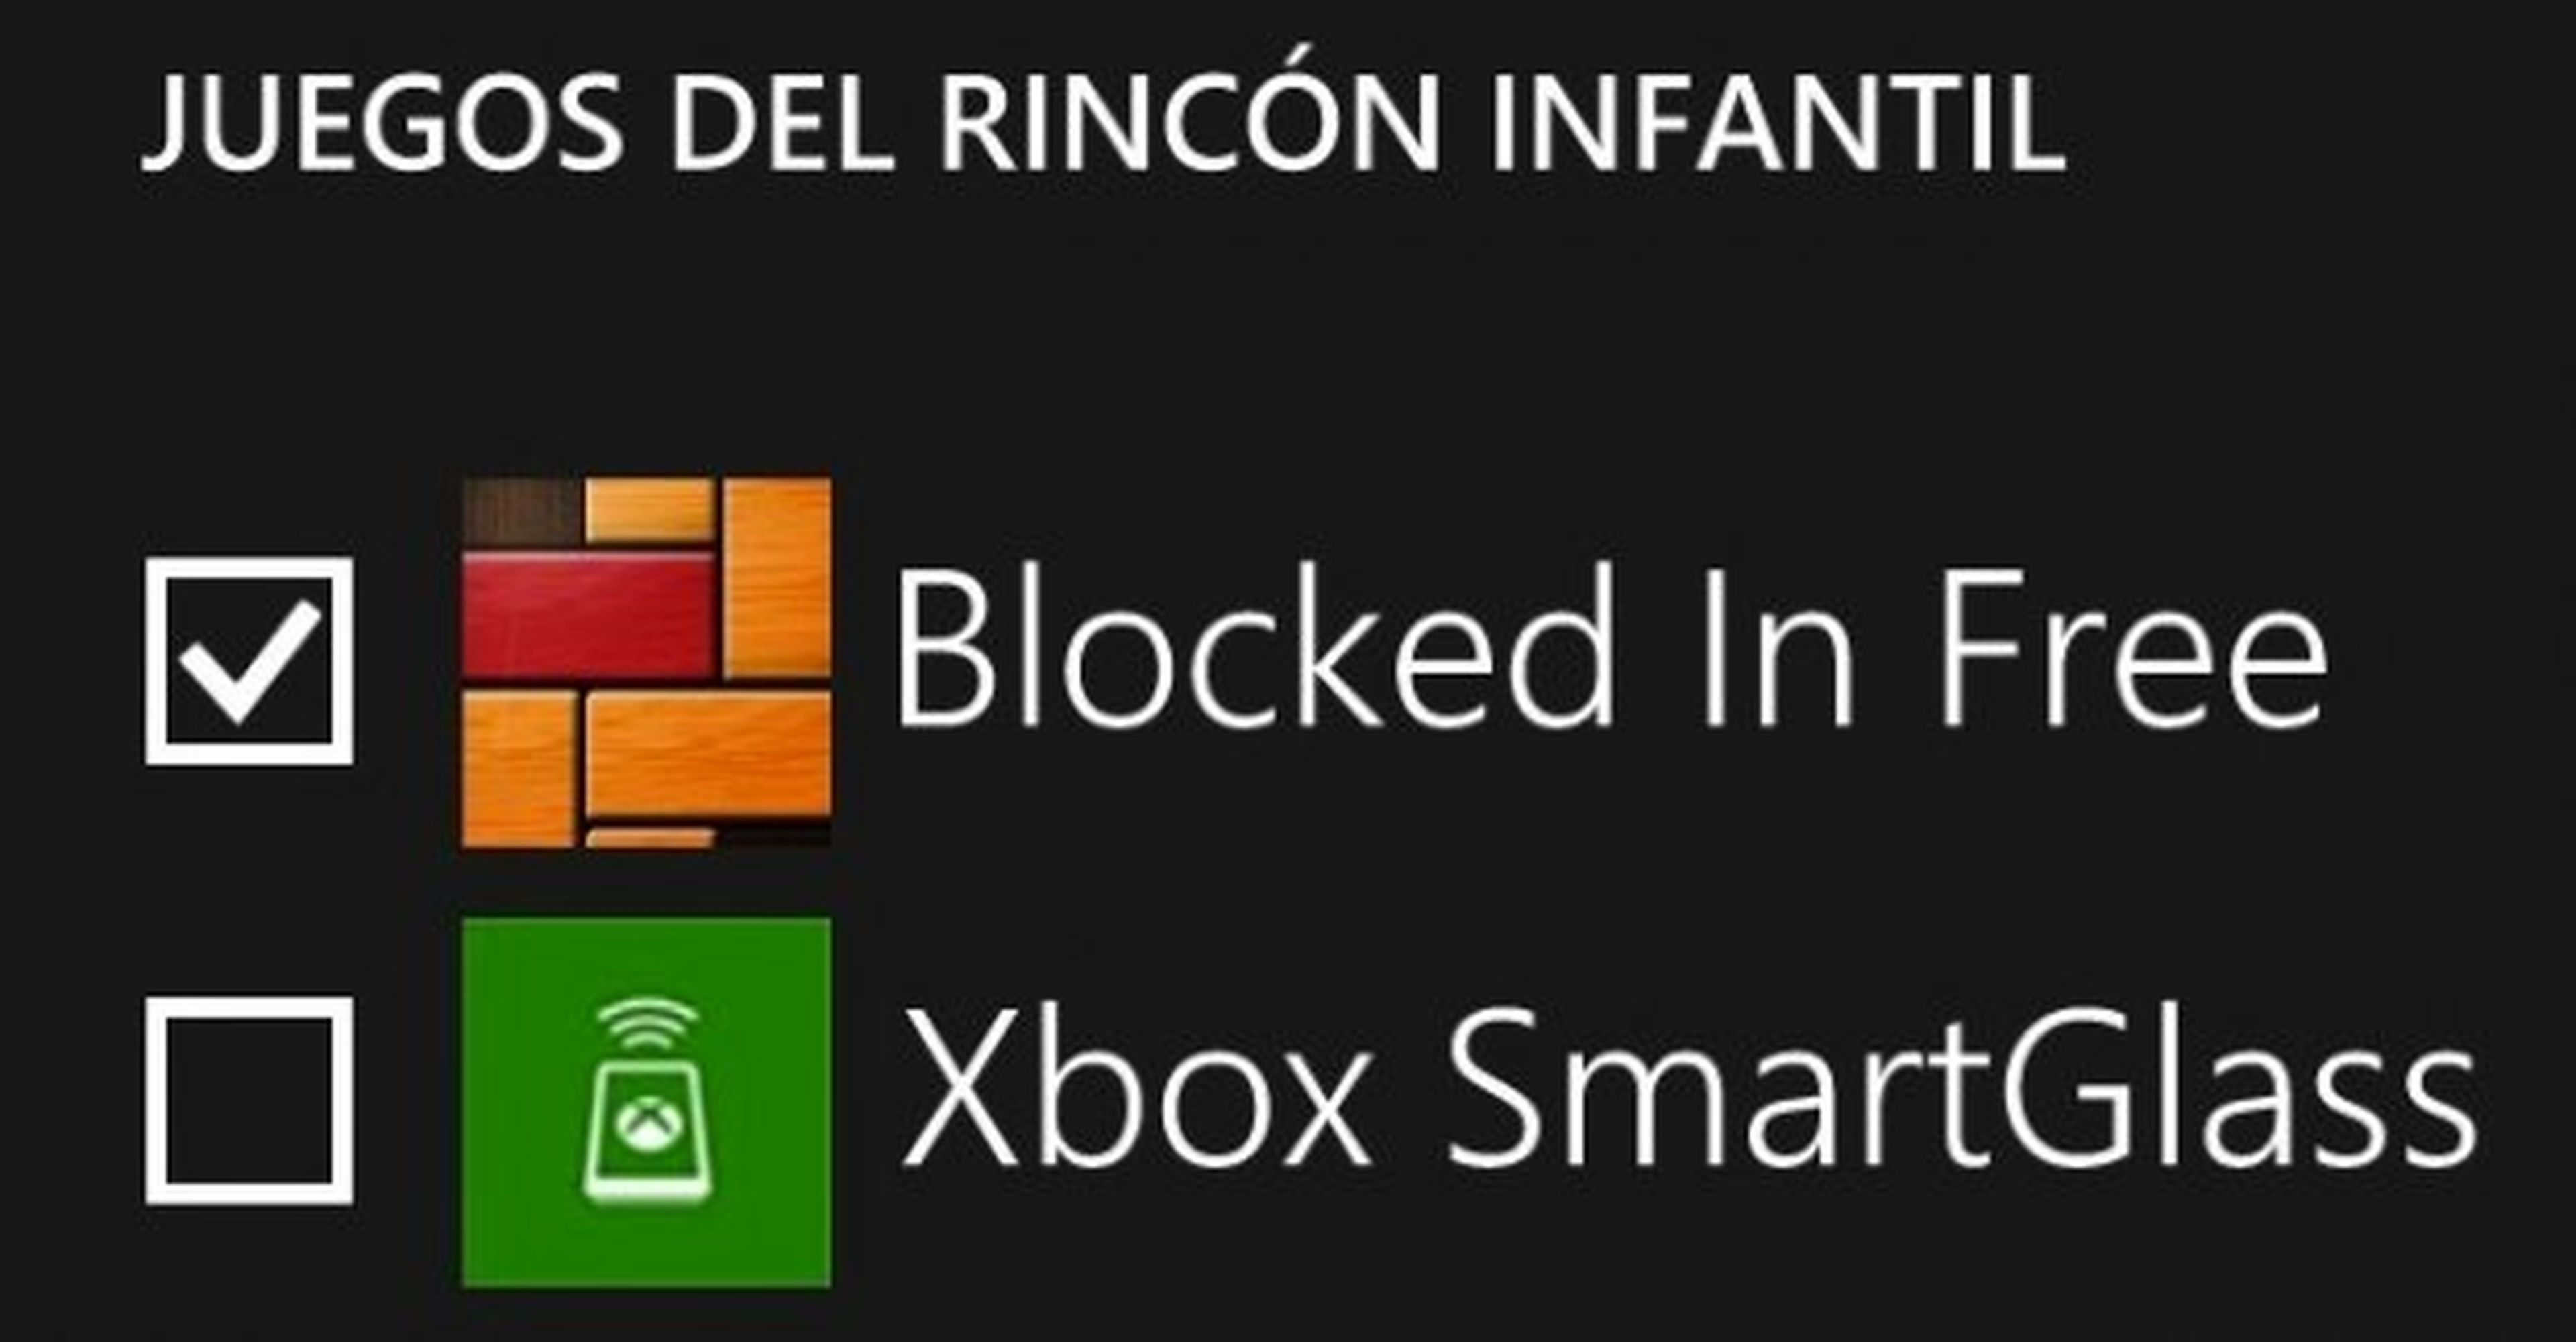 Selección de contenidos del rincón infantil en Windows Phone 8